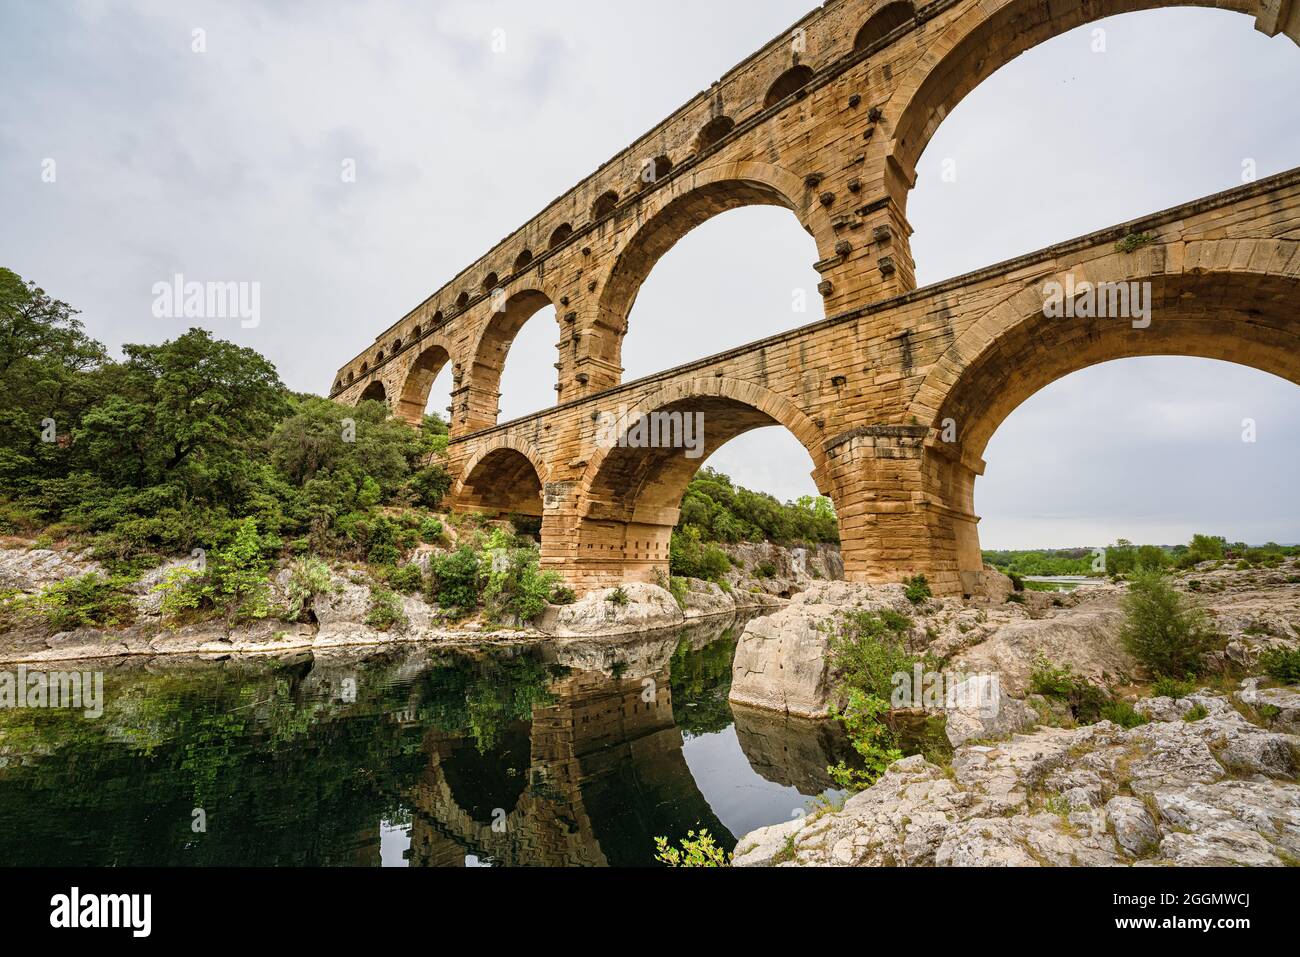 Ansicht eines Aquädukts des Römischen Reiches, Pont du Gard in Frankreich. Alte Zivilisationstechnik für die Wasserversorgung. Stockfoto